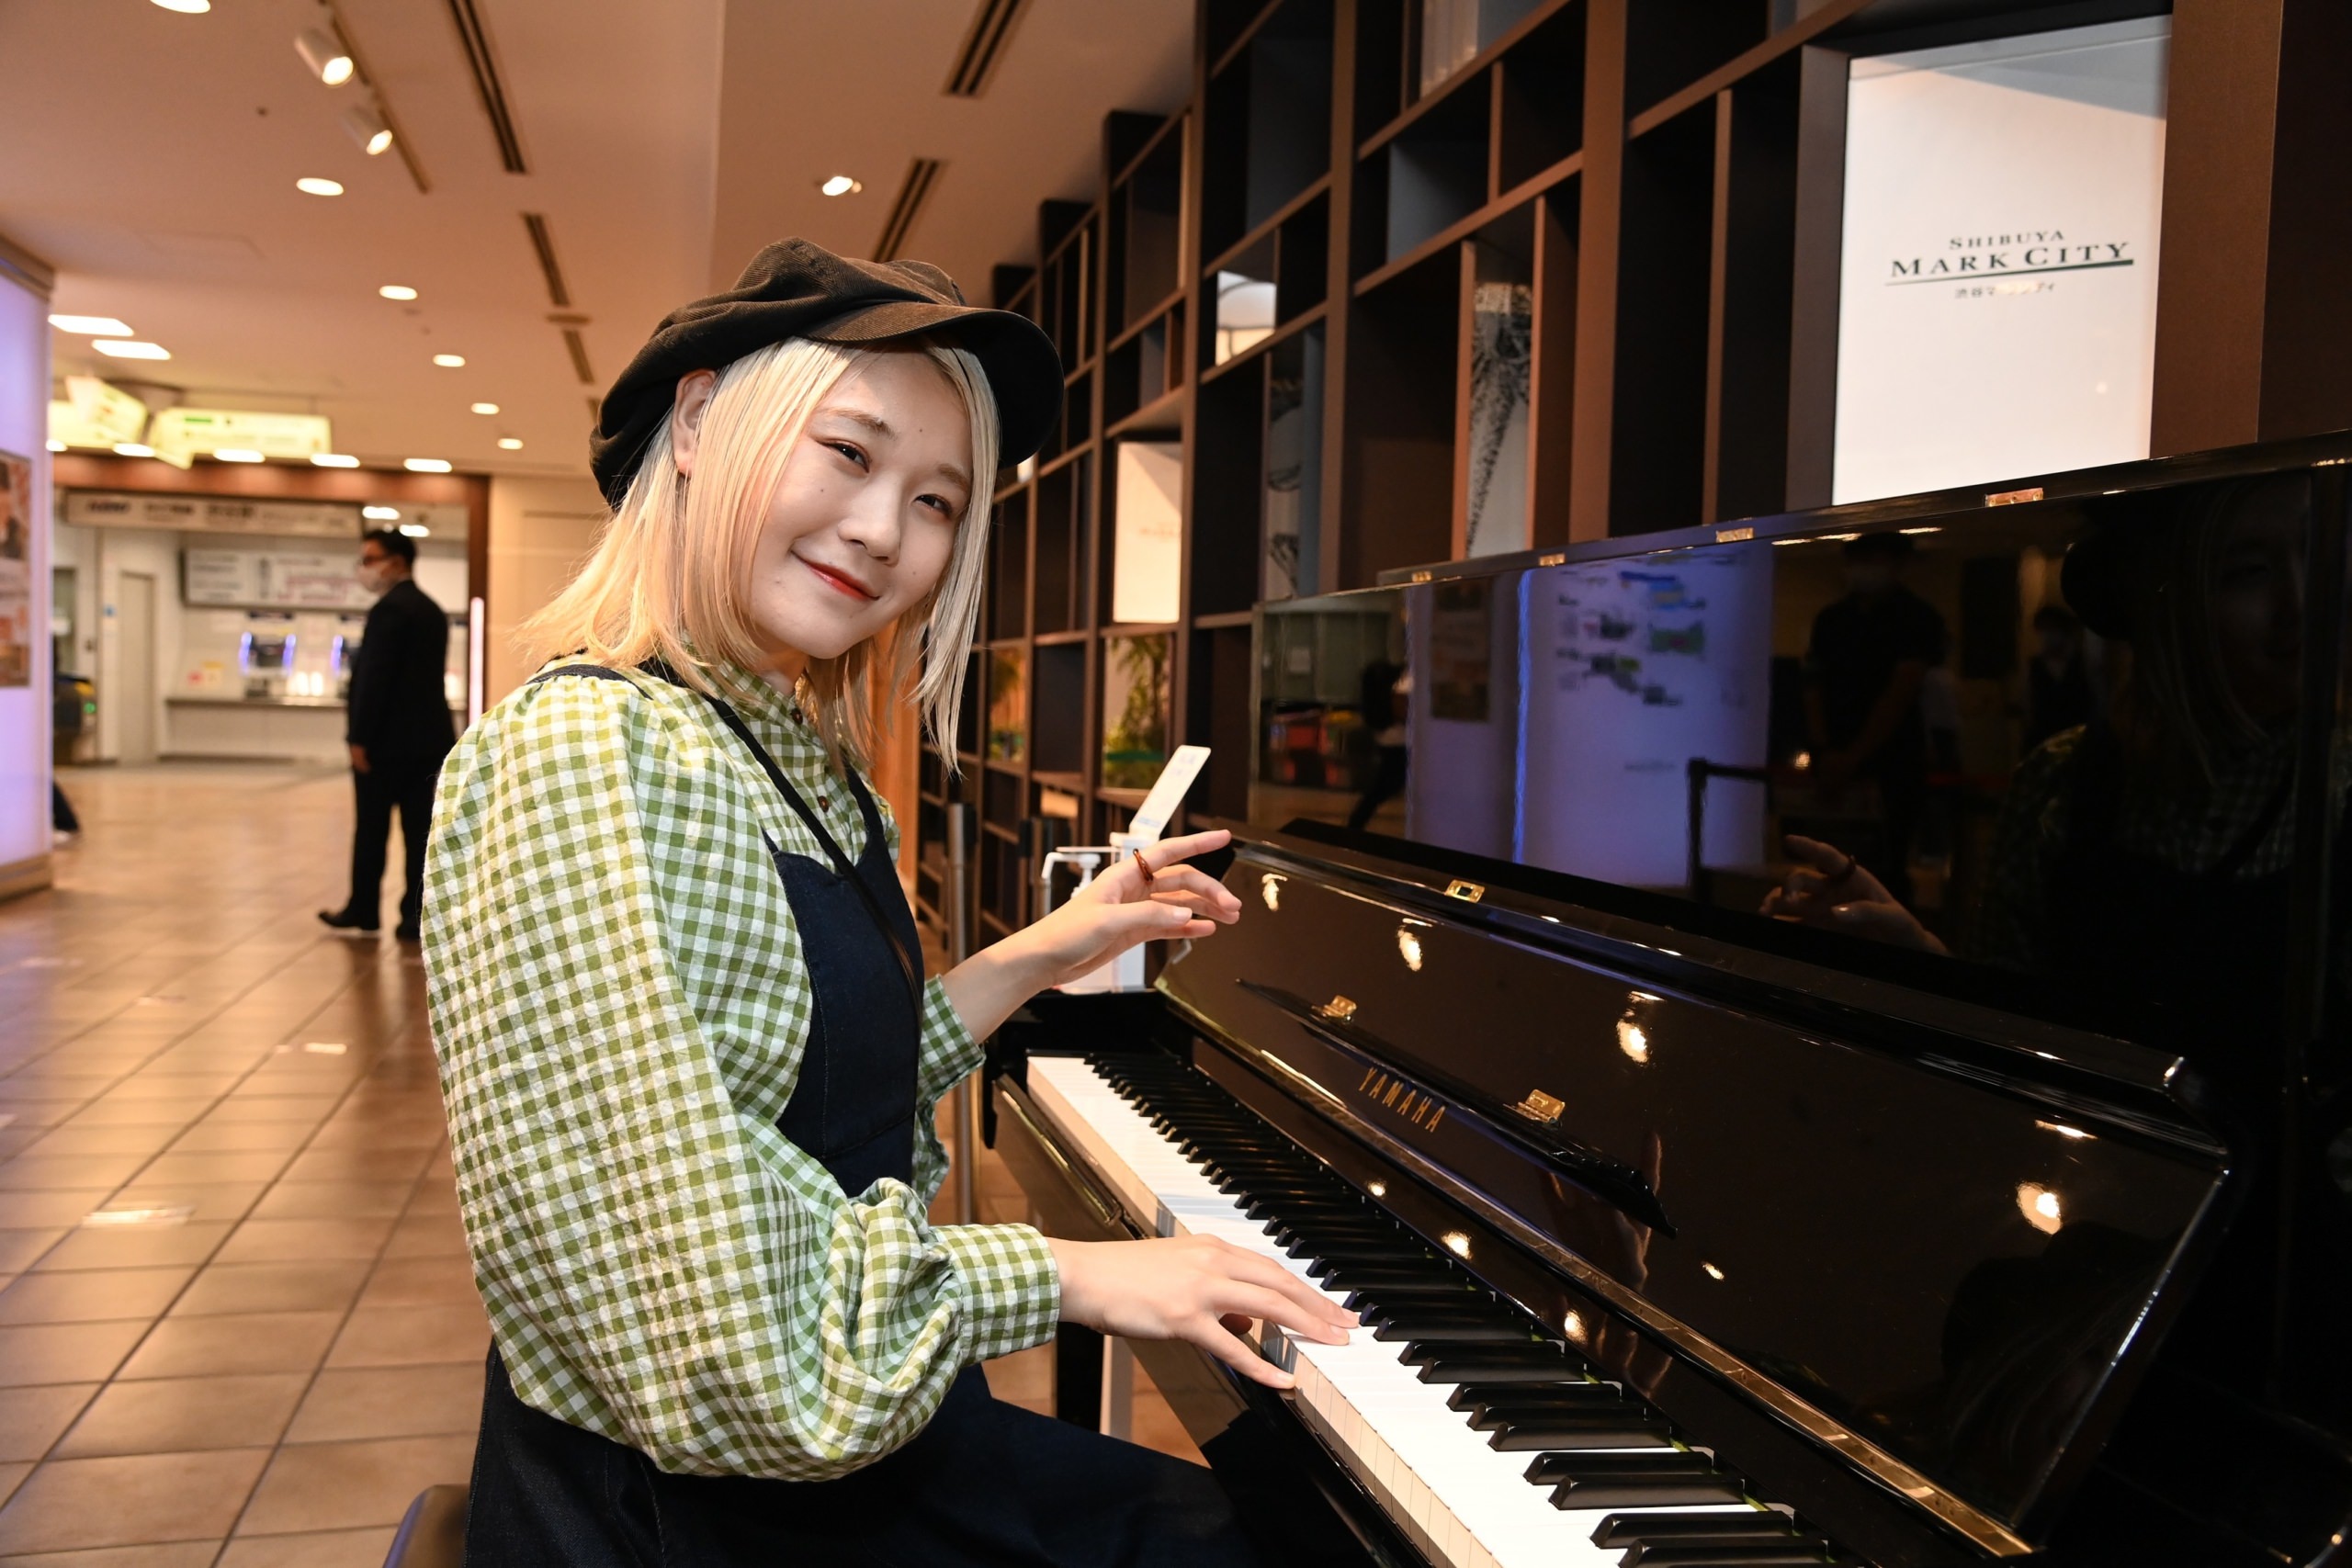 人気ピアノYouTuberハラミちゃん、
渋谷マークシティのストリートピアノ設置記念イベントゲスト出演！生演奏披露で感動に包む。
『夜に駆ける』、嵐の歴代名曲メドレーなど即興演奏。
今後挑戦したいこと「子どもたちの笑顔をつくりたい」